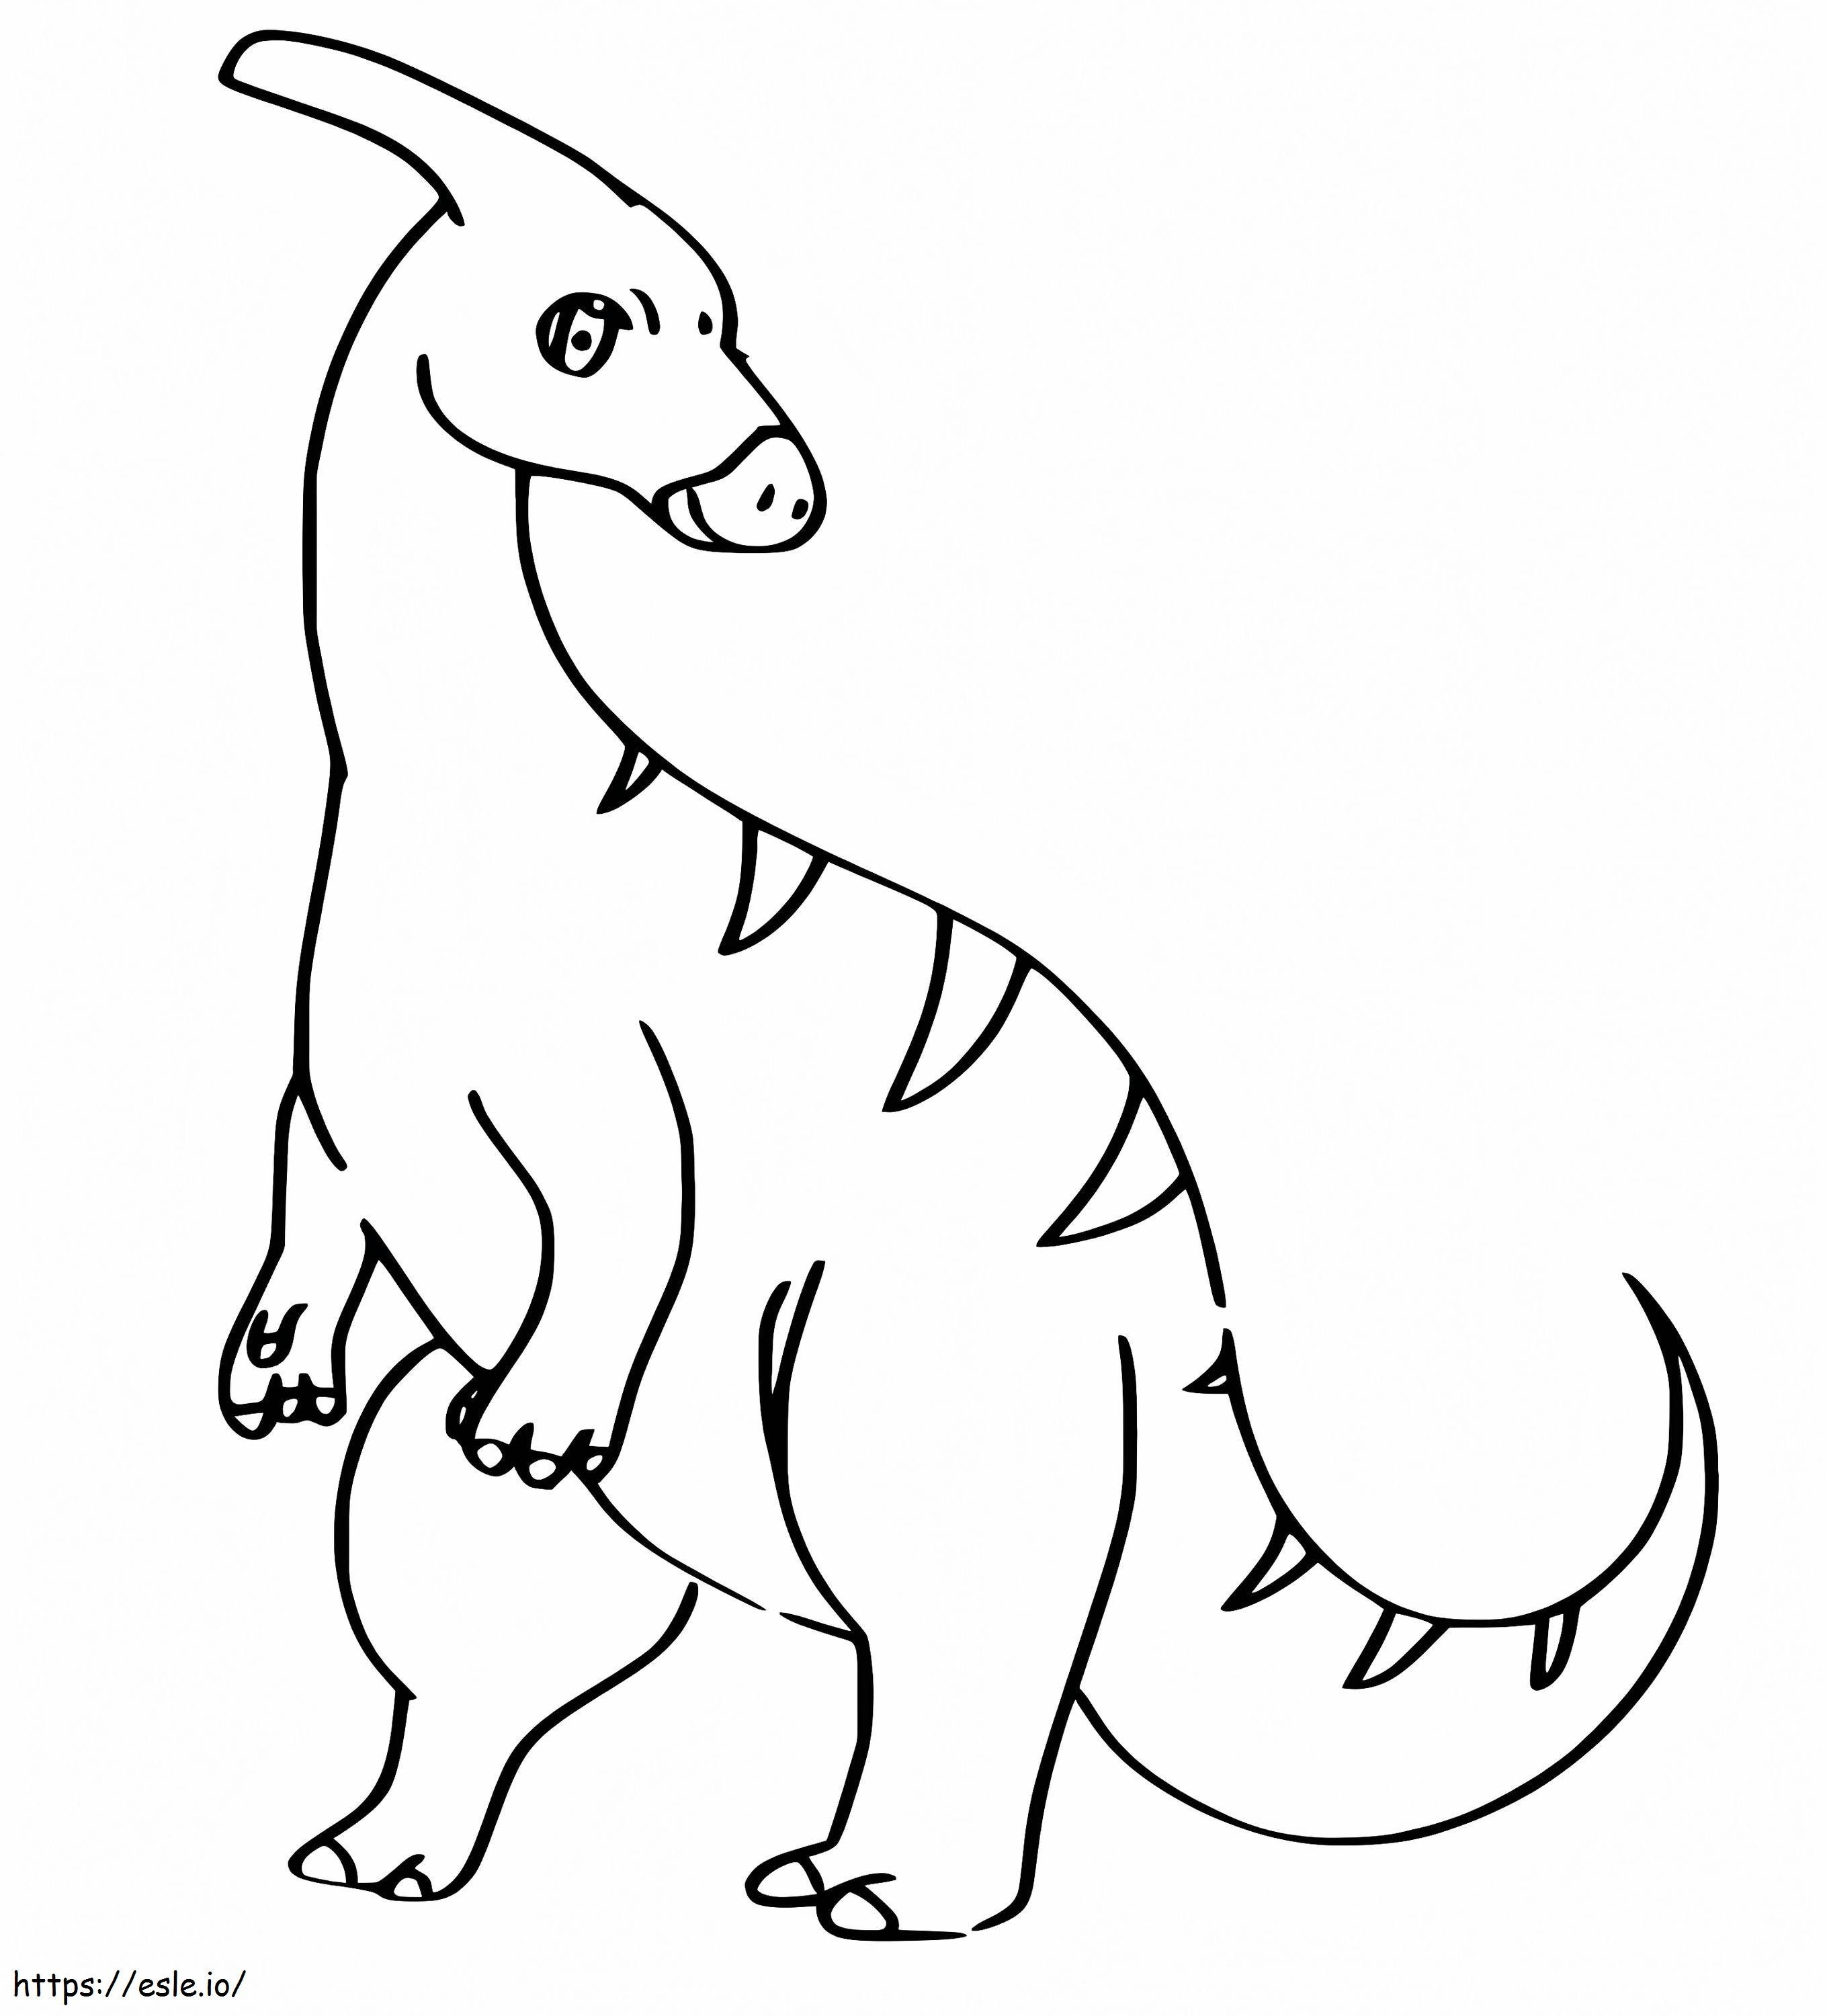 Coloriage Parasaurolophus Belle à imprimer dessin